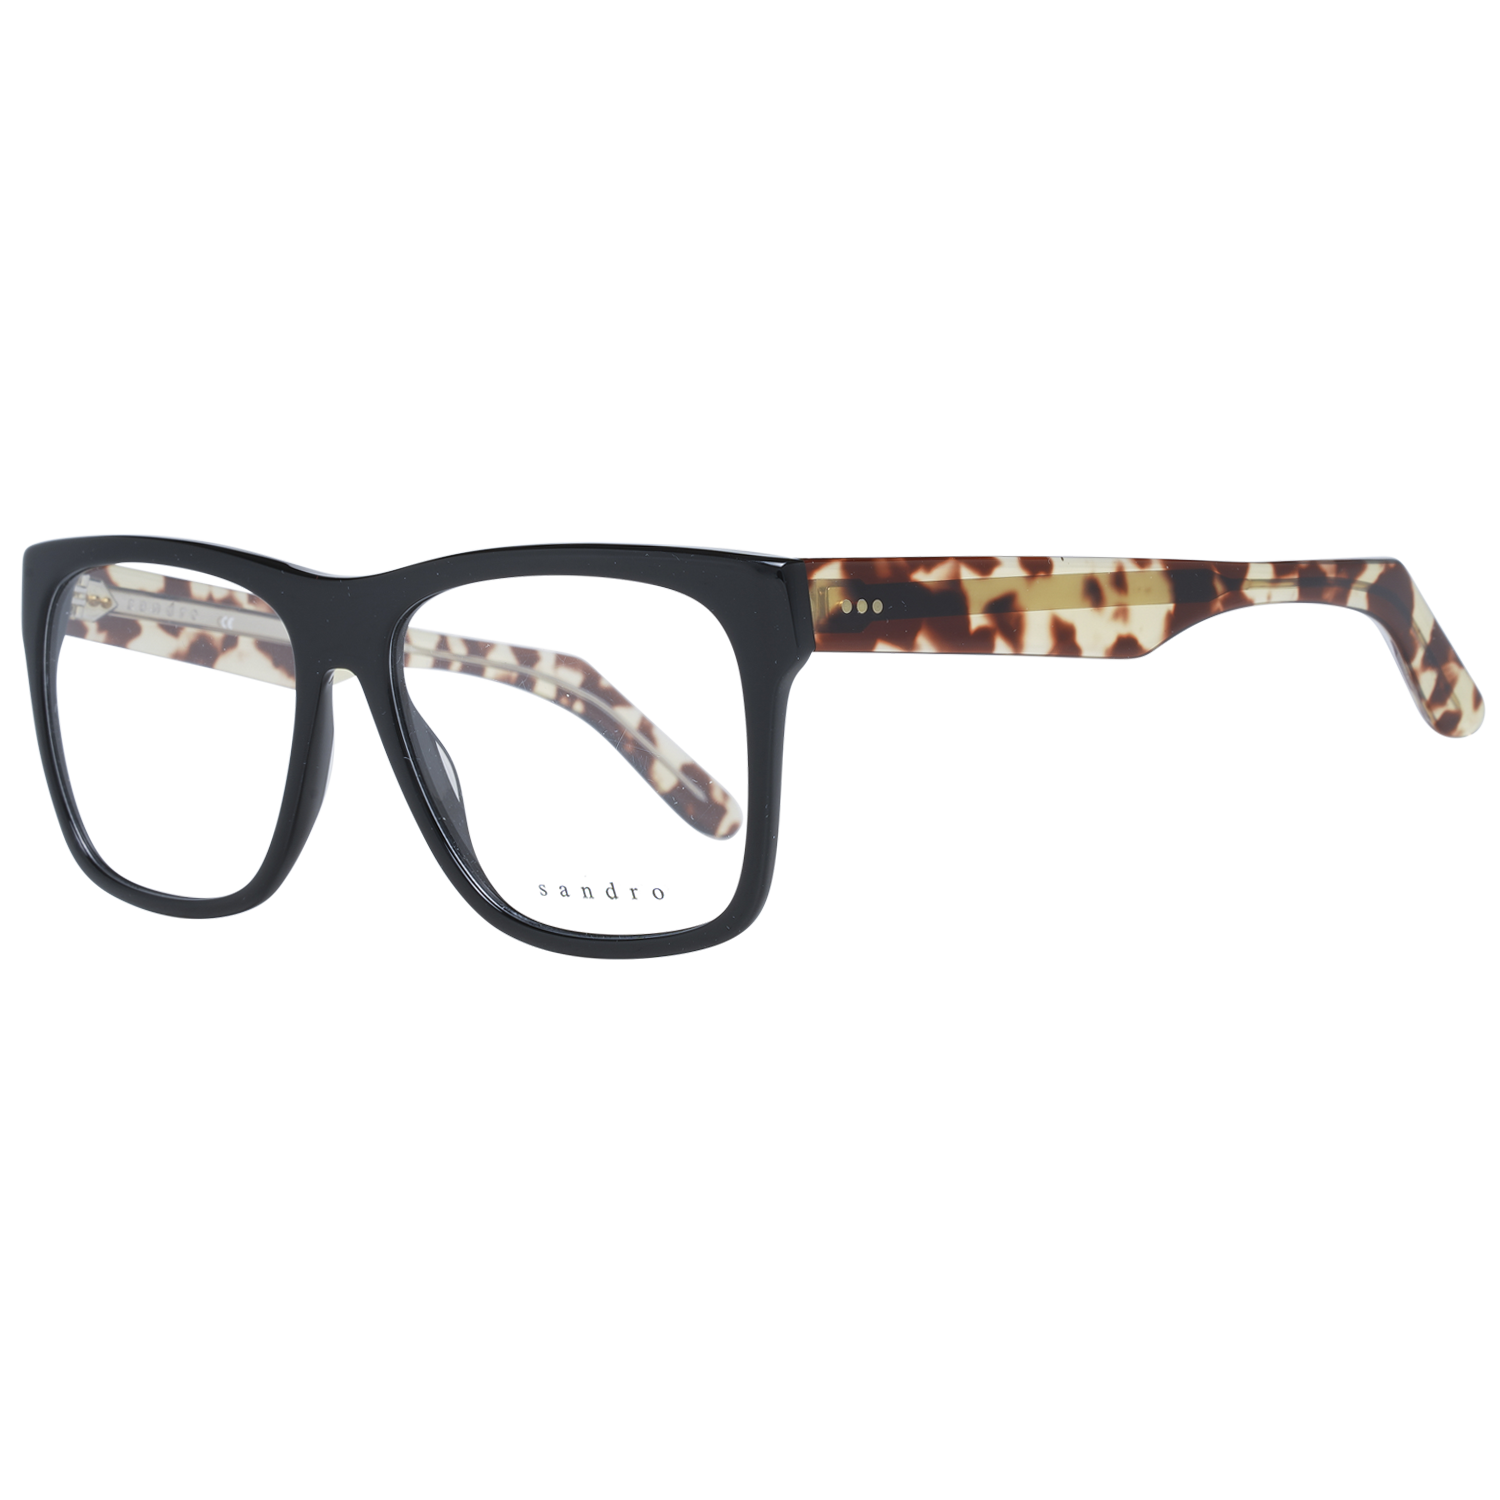 Sandro Frames Sandro Glasses Men Black Square Frames SD1002 102 54mm Eyeglasses Eyewear UK USA Australia 